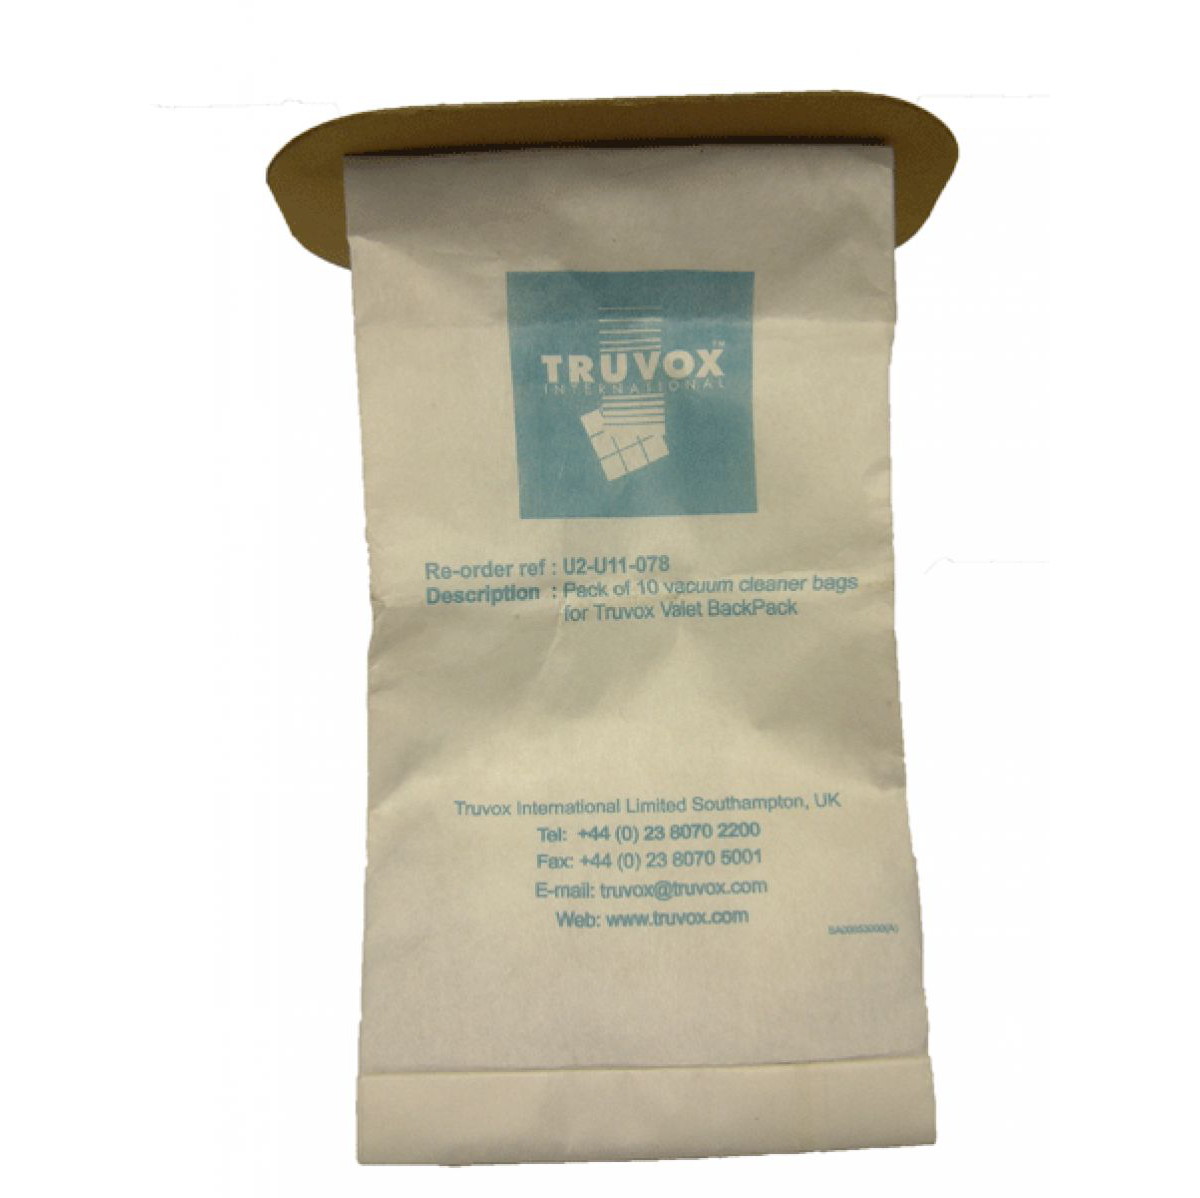 Truvox Valet Backpack Dust Bags (U2-U11-078) - pack of 10